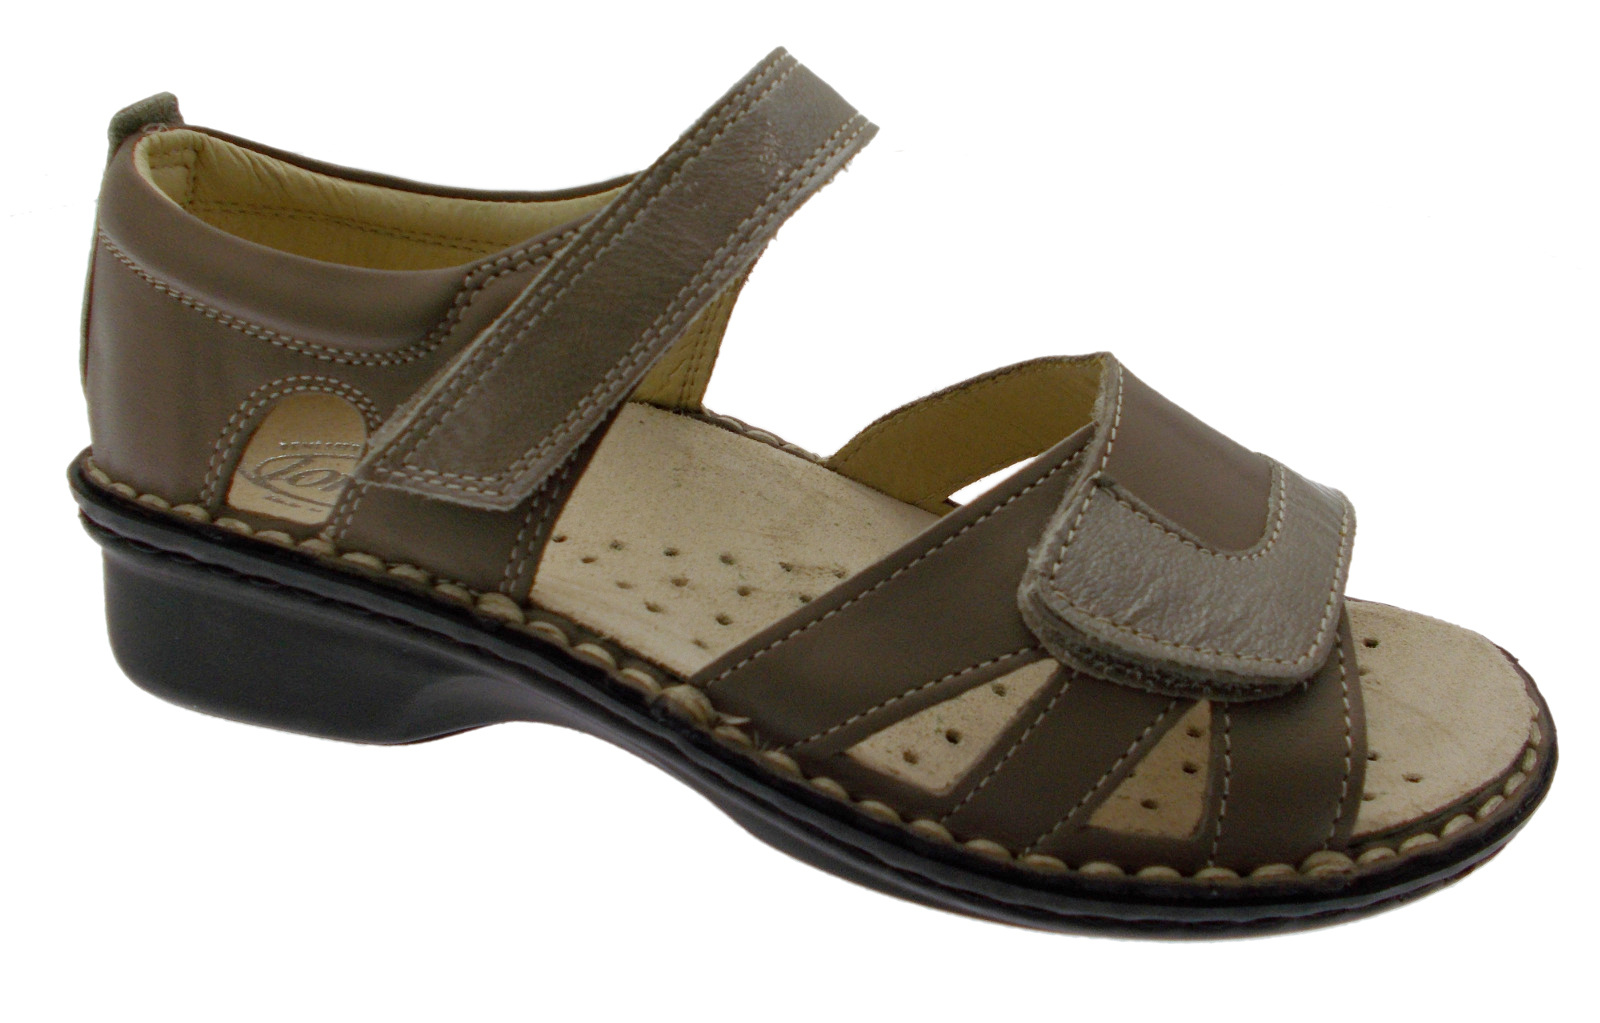 M2524 shoe extra large adjustable orthopedic taupe sandal Loren | eBay